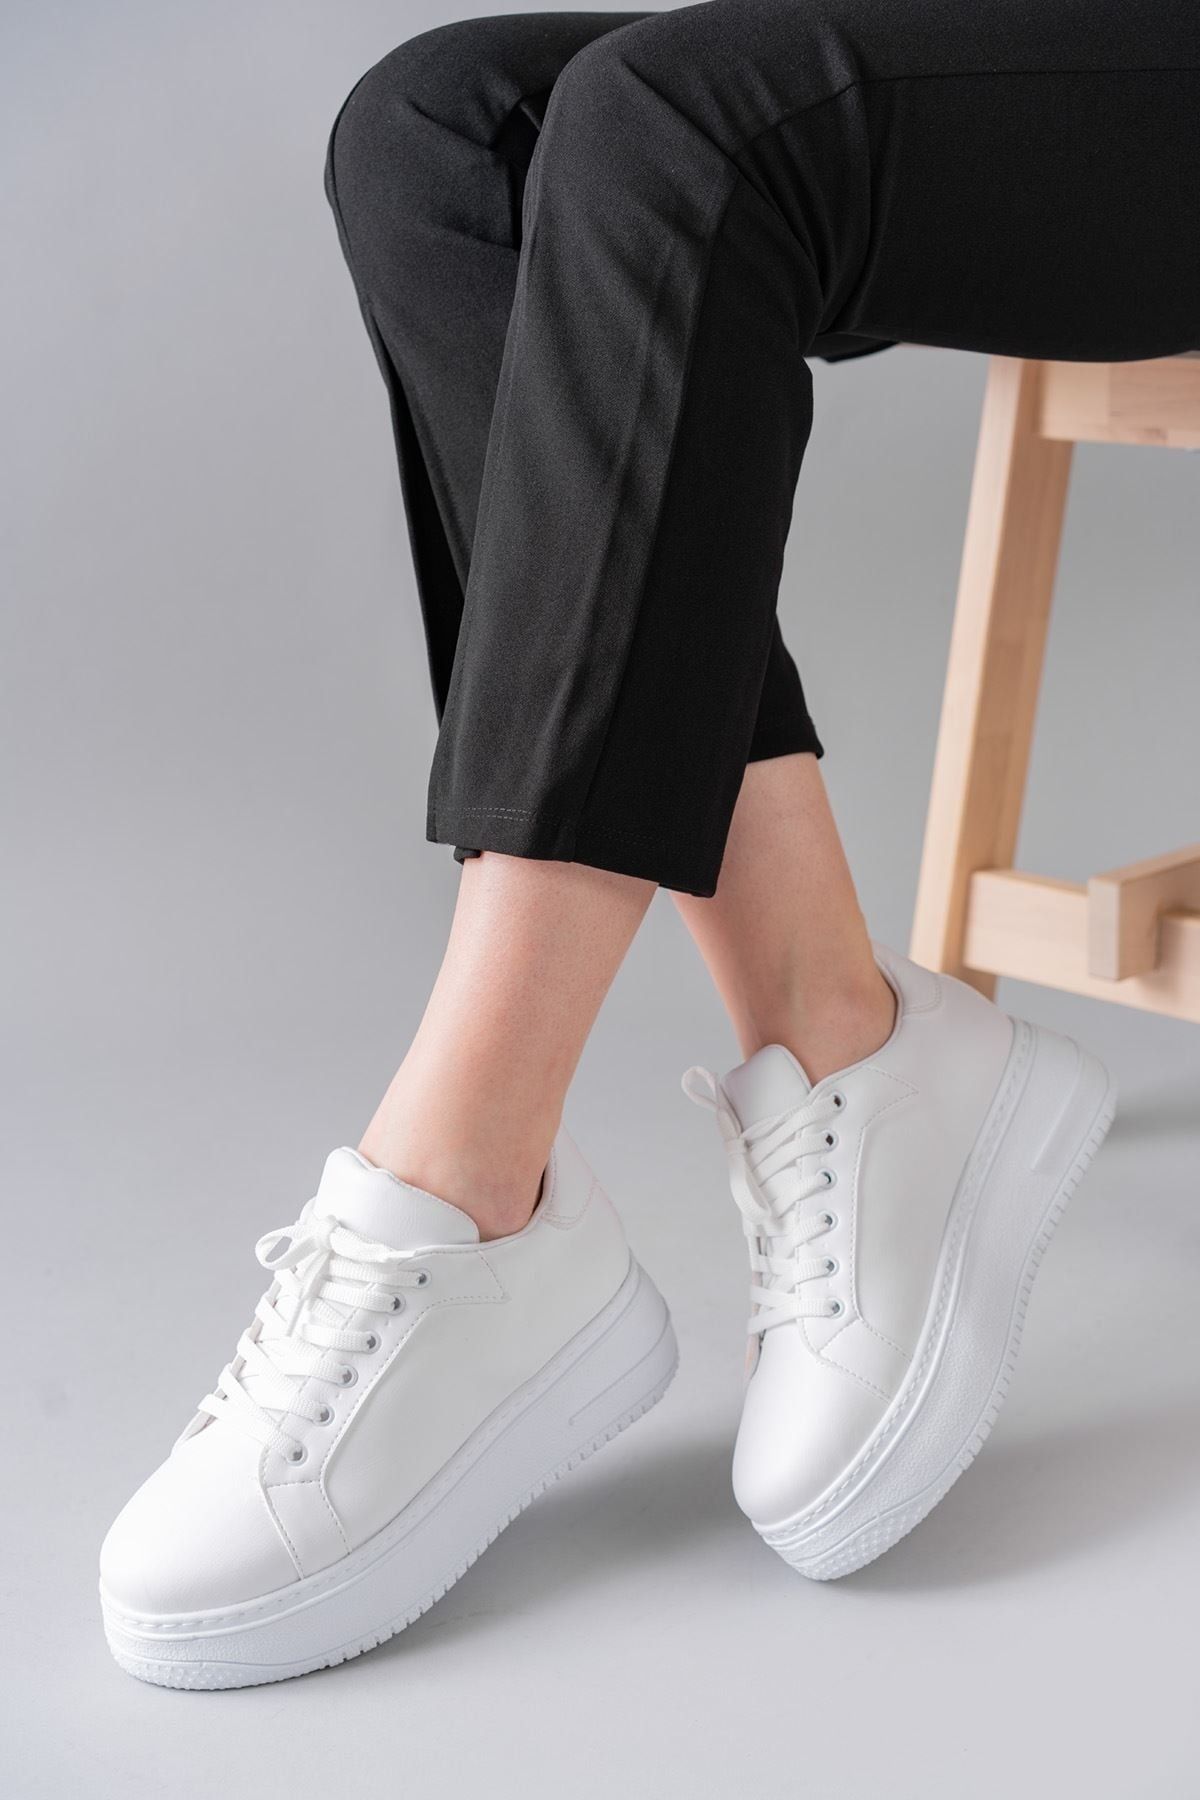 Ernixs Moda Luke Beyaz Bağcıklı Yüksek Taban Spor Ayakkabı